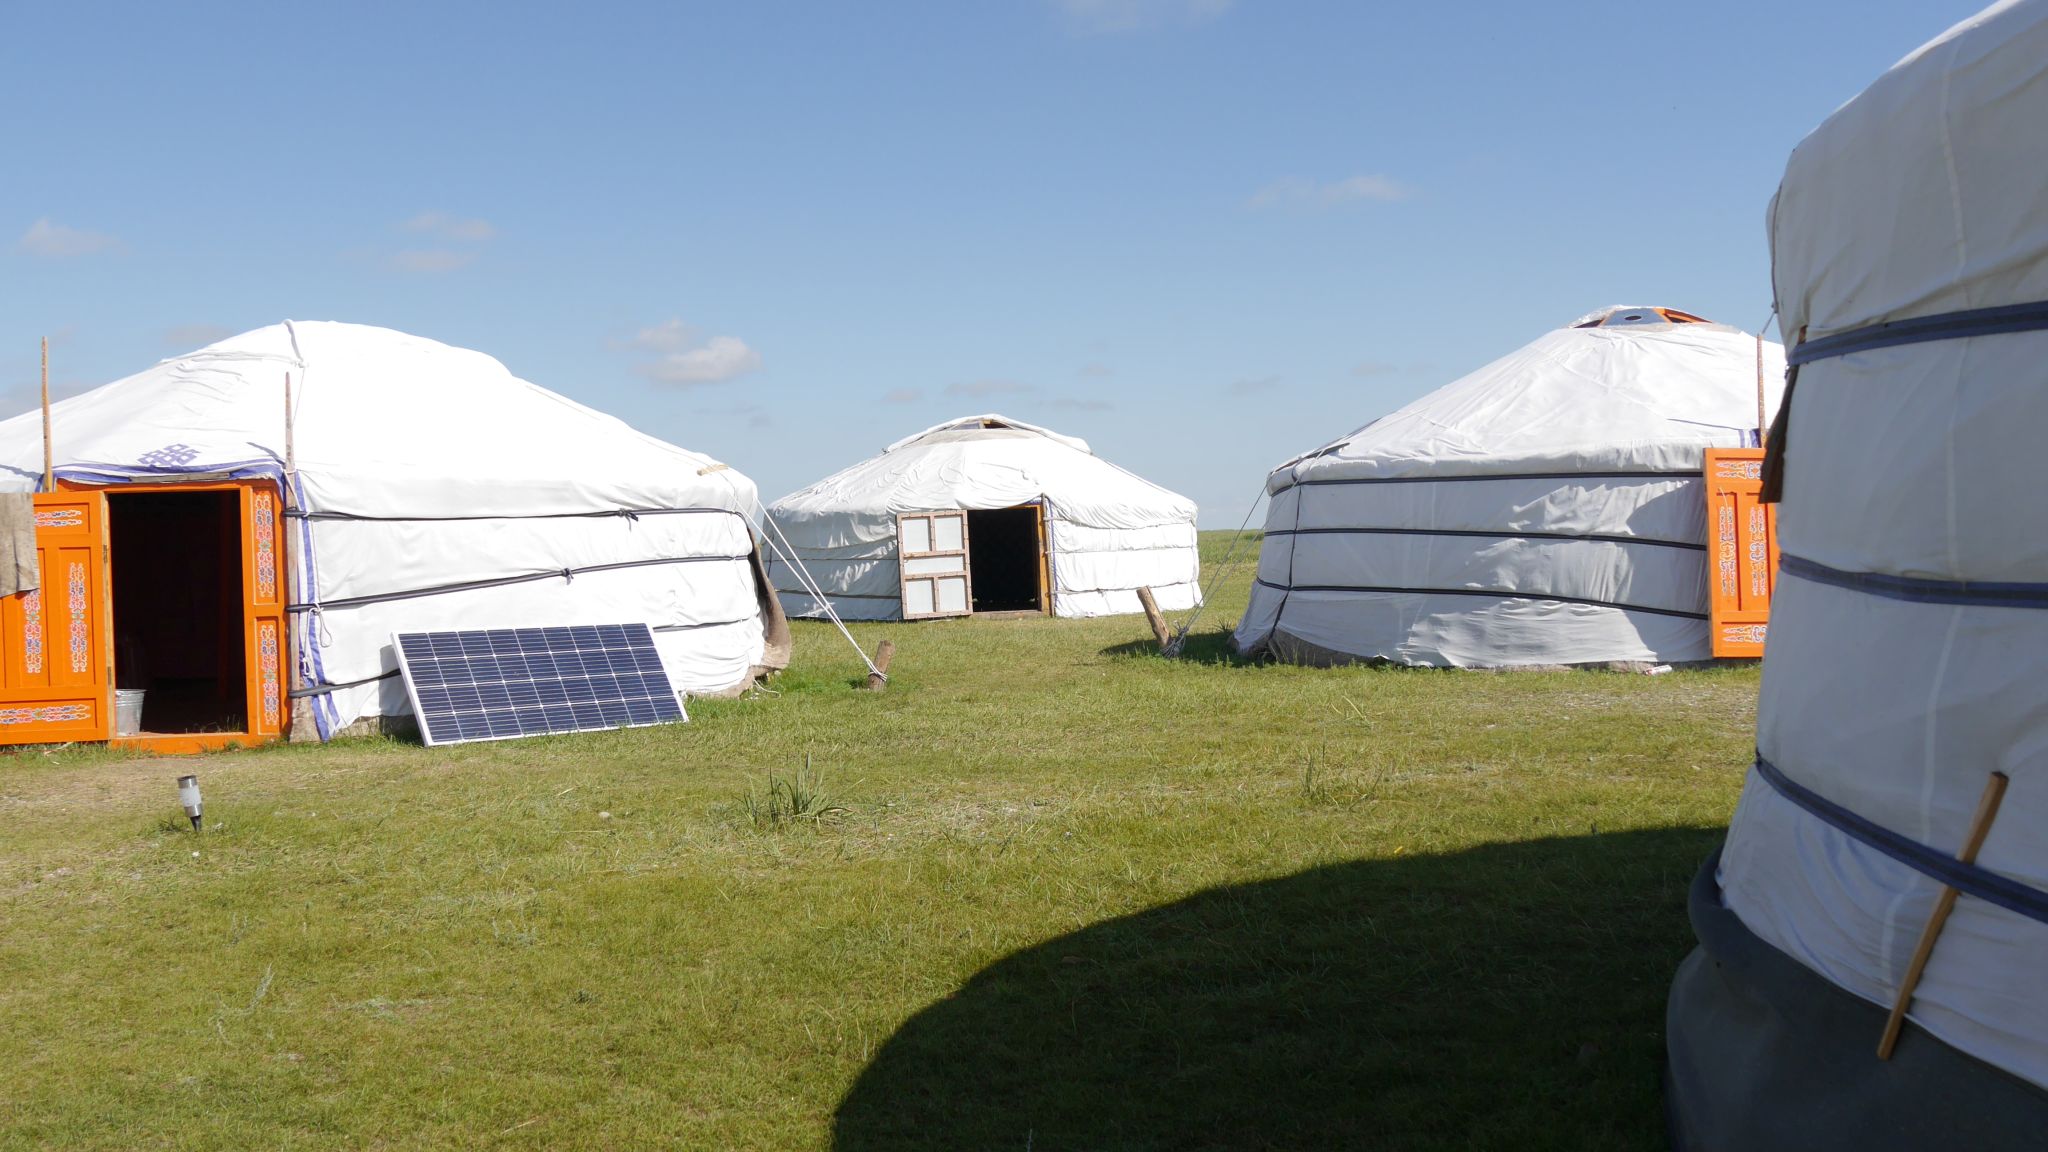 Ein Bild, das mehrere mongolische Jurten und etwas Ausrüstung, wie ein Solarpanel zeigt.